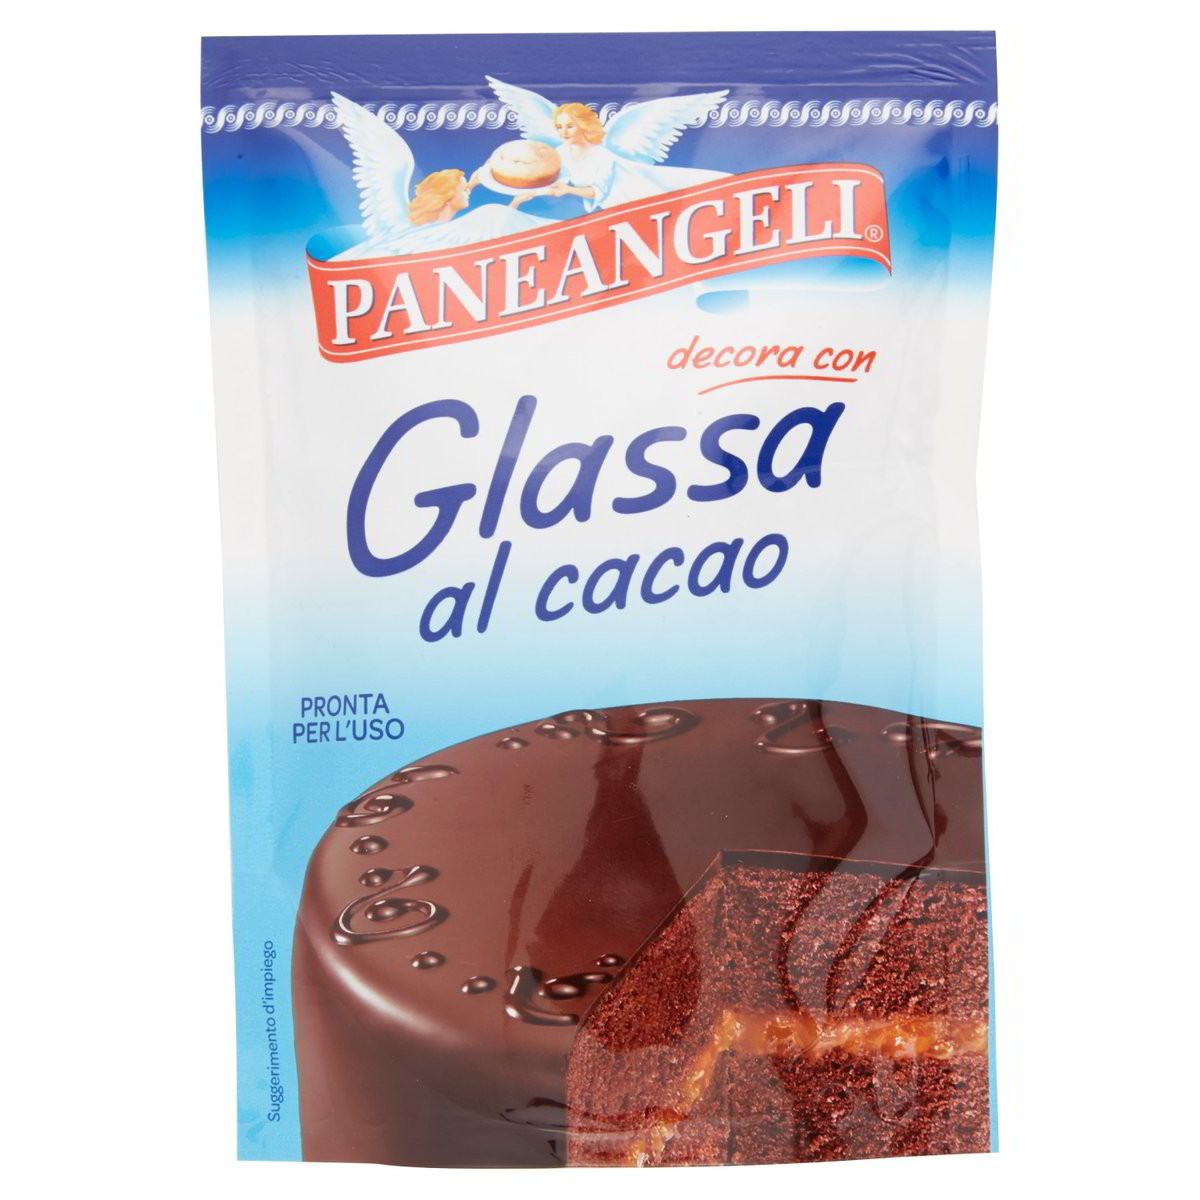 Paneangeli Glassa al cacao